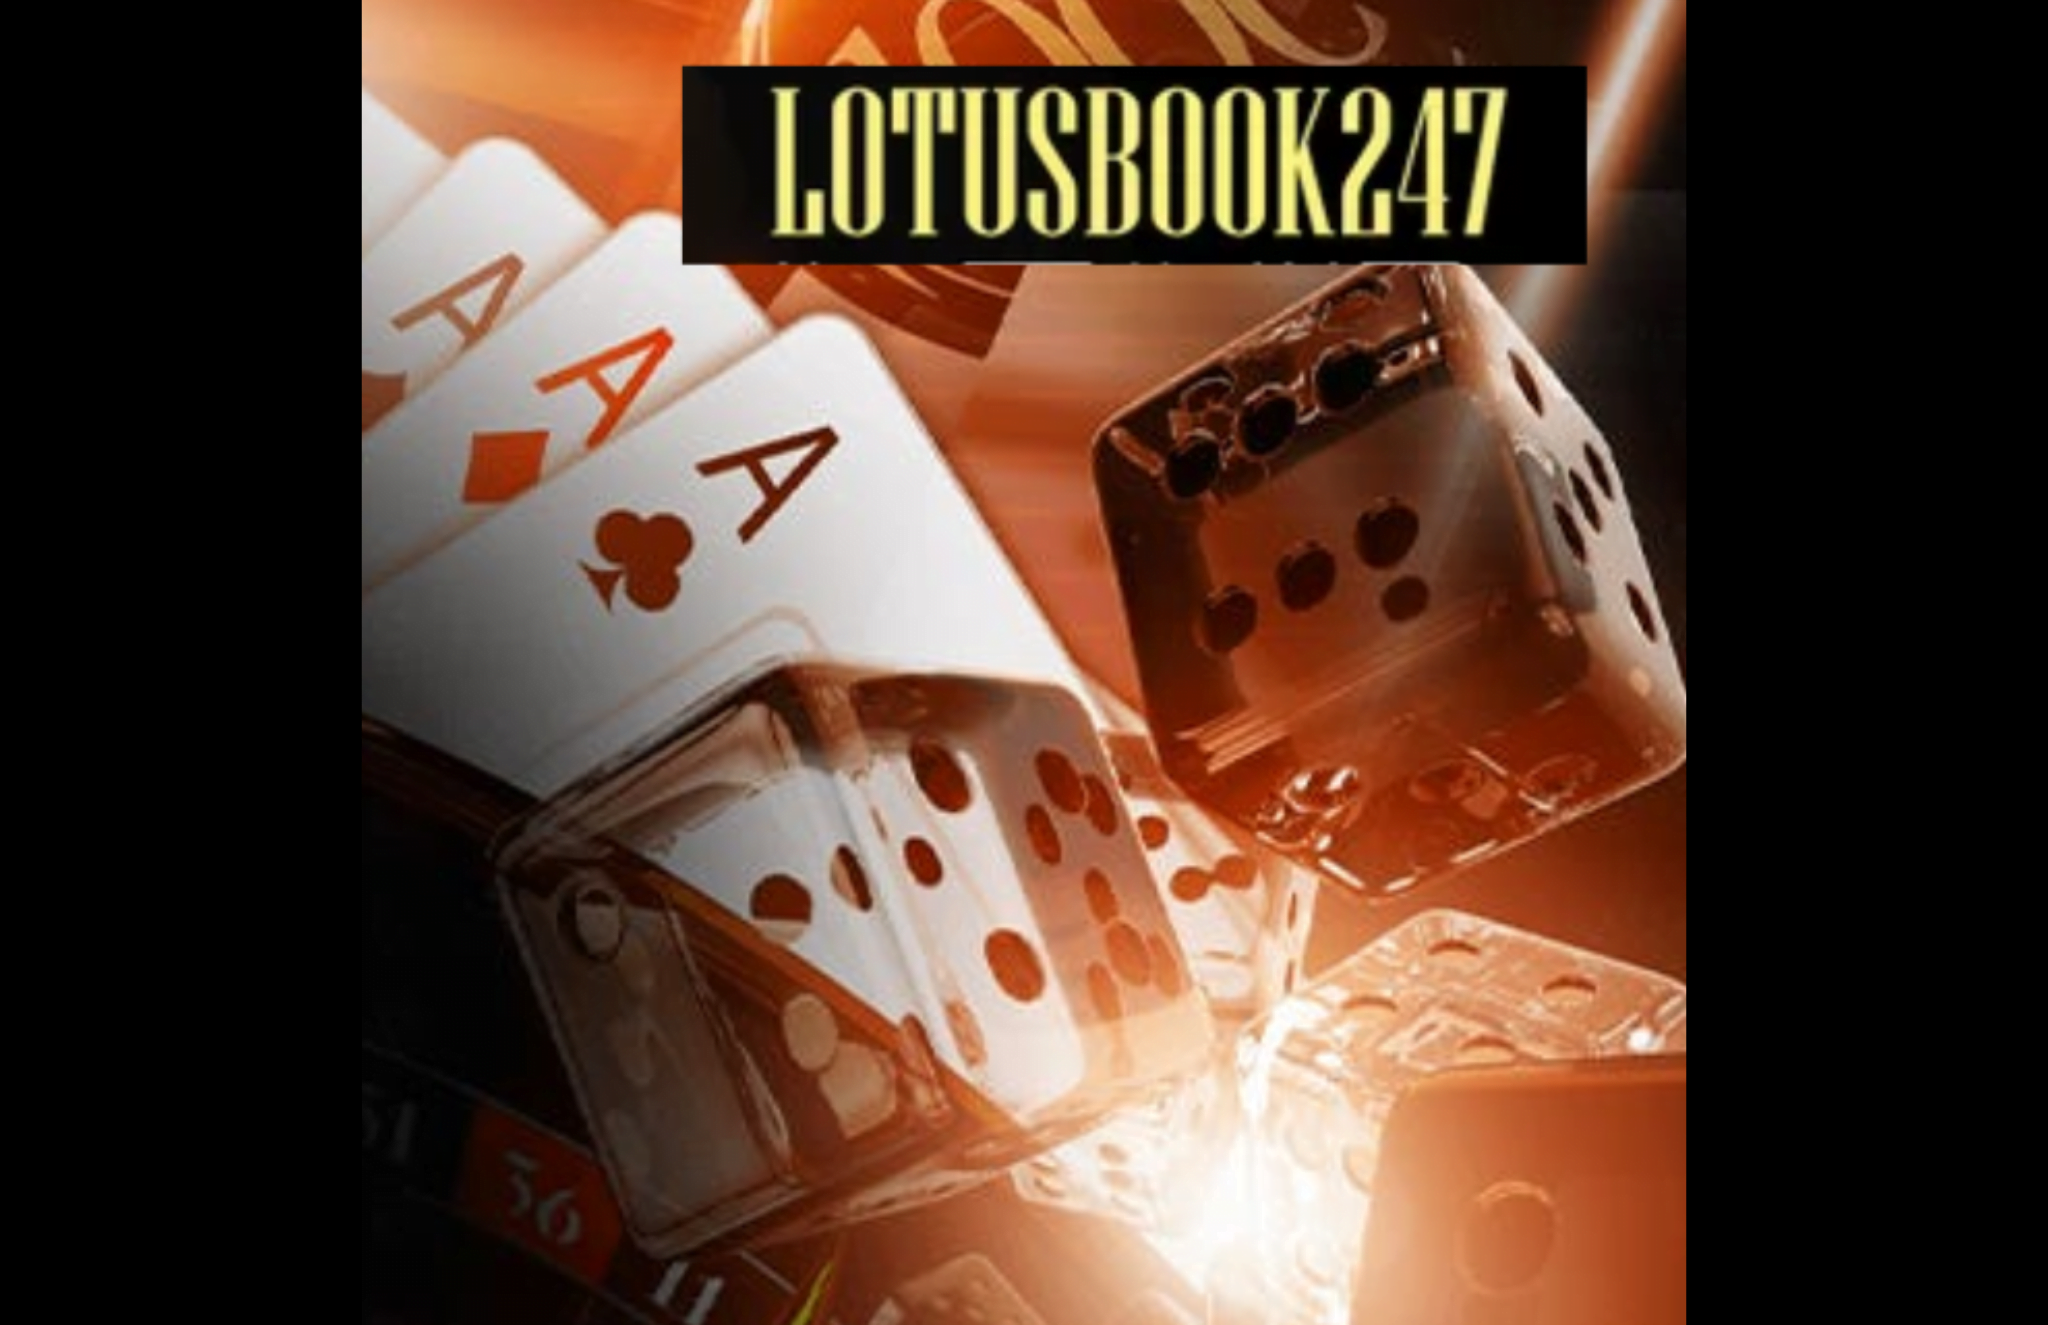 Lotusbook247